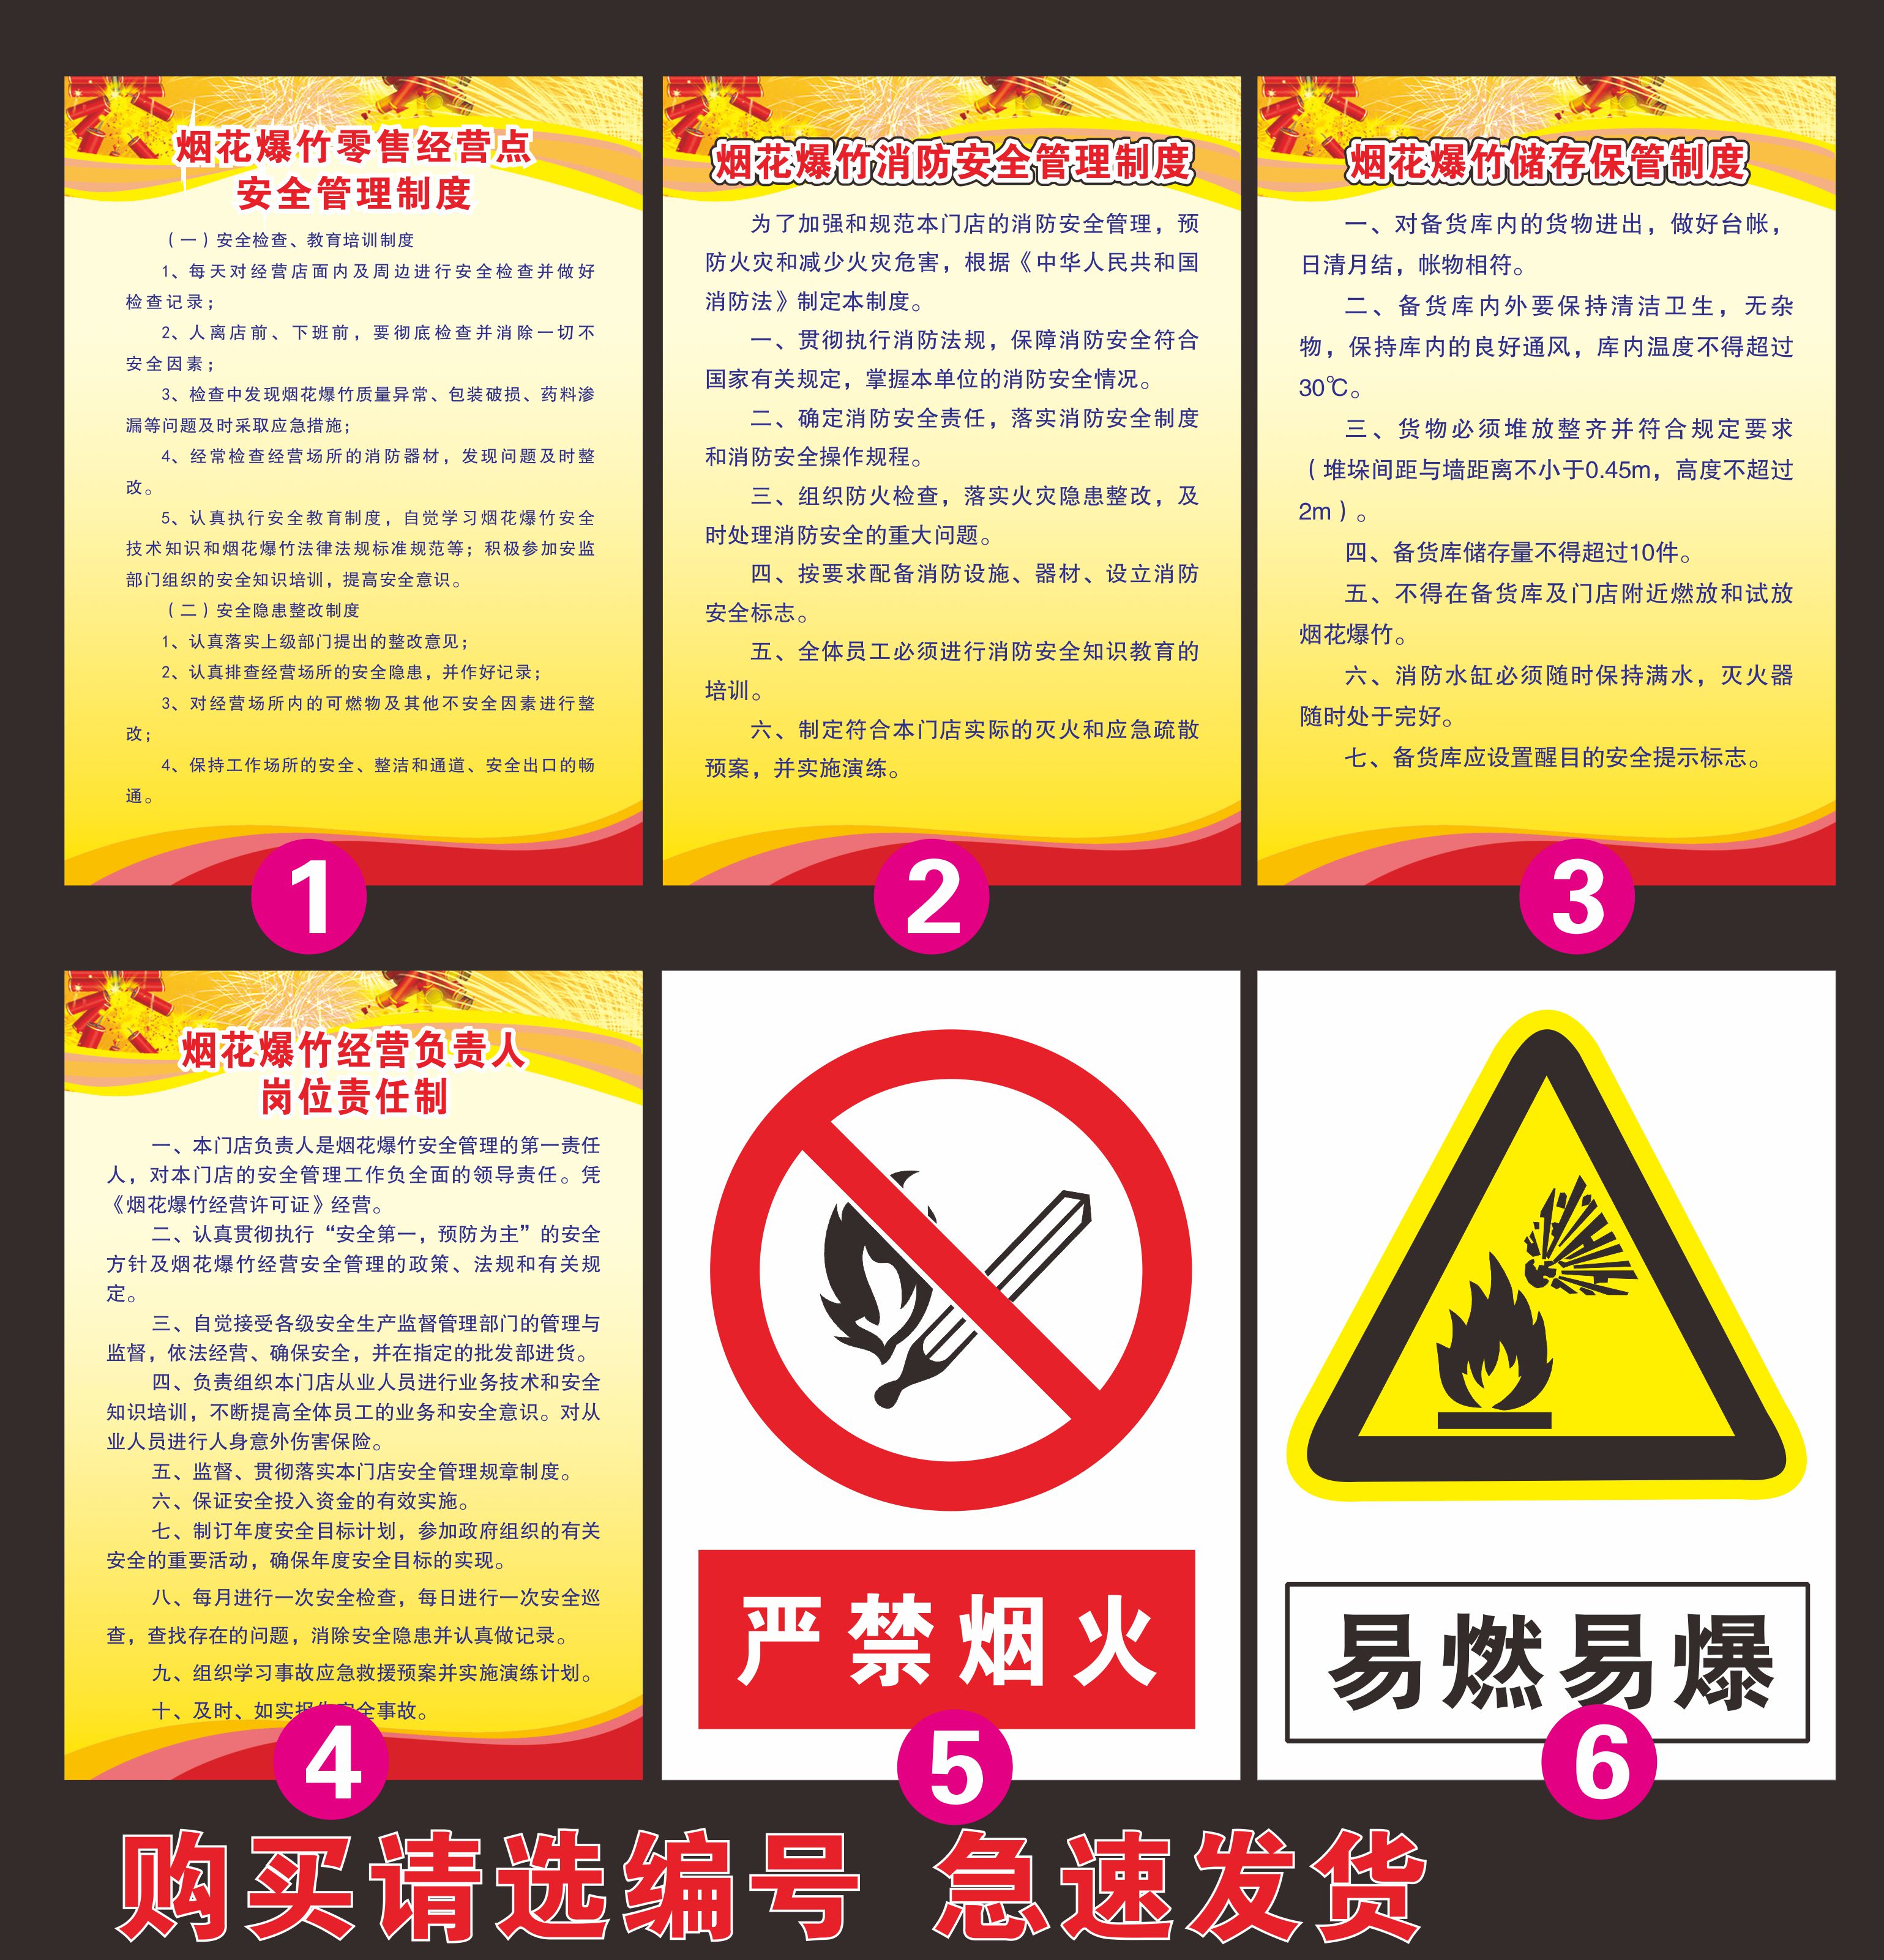 烟花爆竹安全管理制度经营责任制度易燃易爆标志禁止燃放烟花爆竹